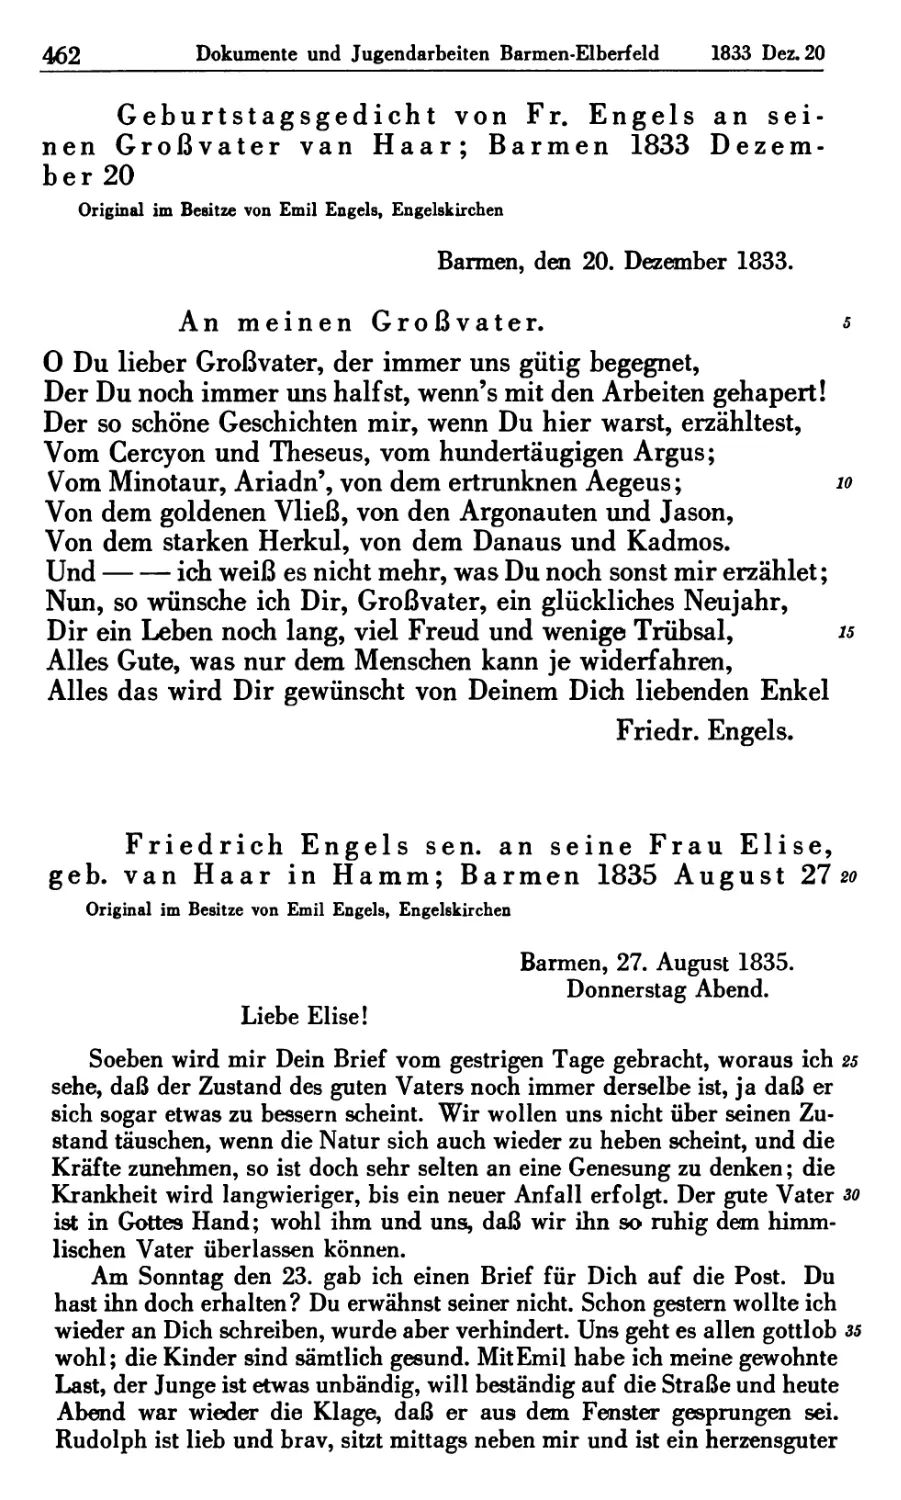 3. Geburtstagsgedicht von Engels an seinen Großvater van Haar; Barmen 1833 Dezember 20
4. Friedrich Engels sen. an seine Frau Elise, geb. van Haar in Hamm; Barmen 1835 August 27